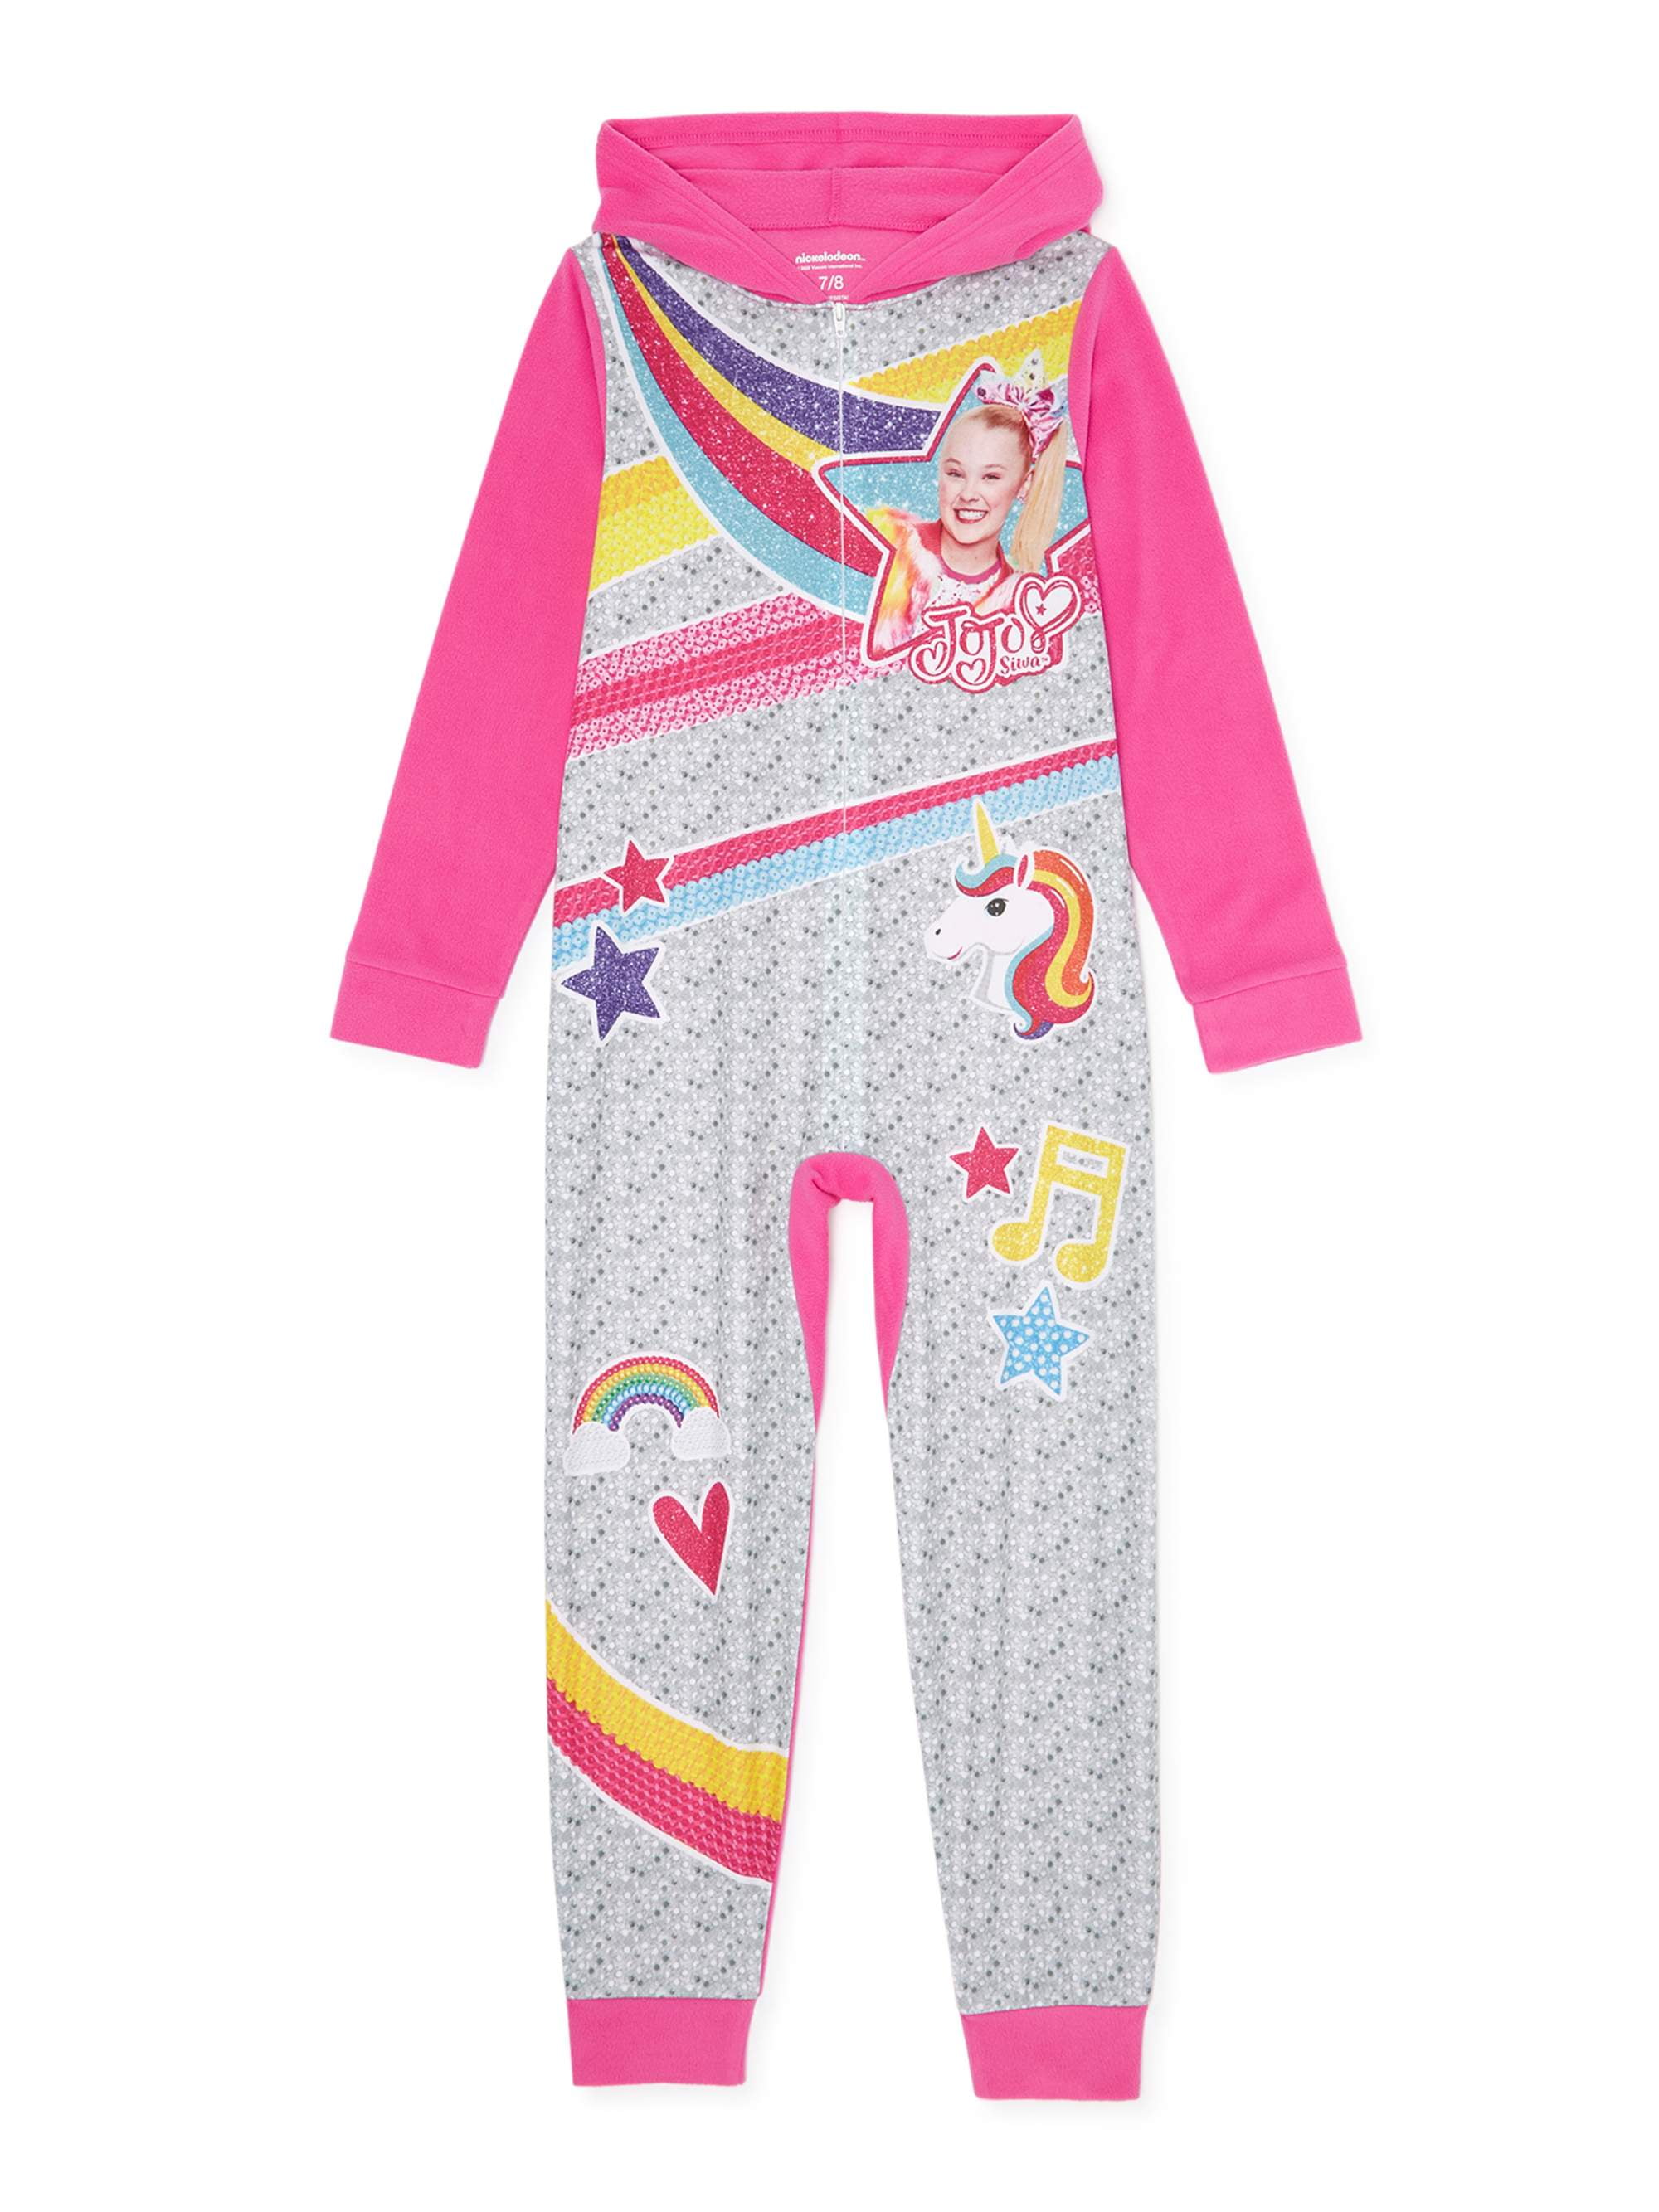 JoJo Siwa Girls Size 8 Pajamas One Piece Blanket Sleeper Union Suit Medium M NWT